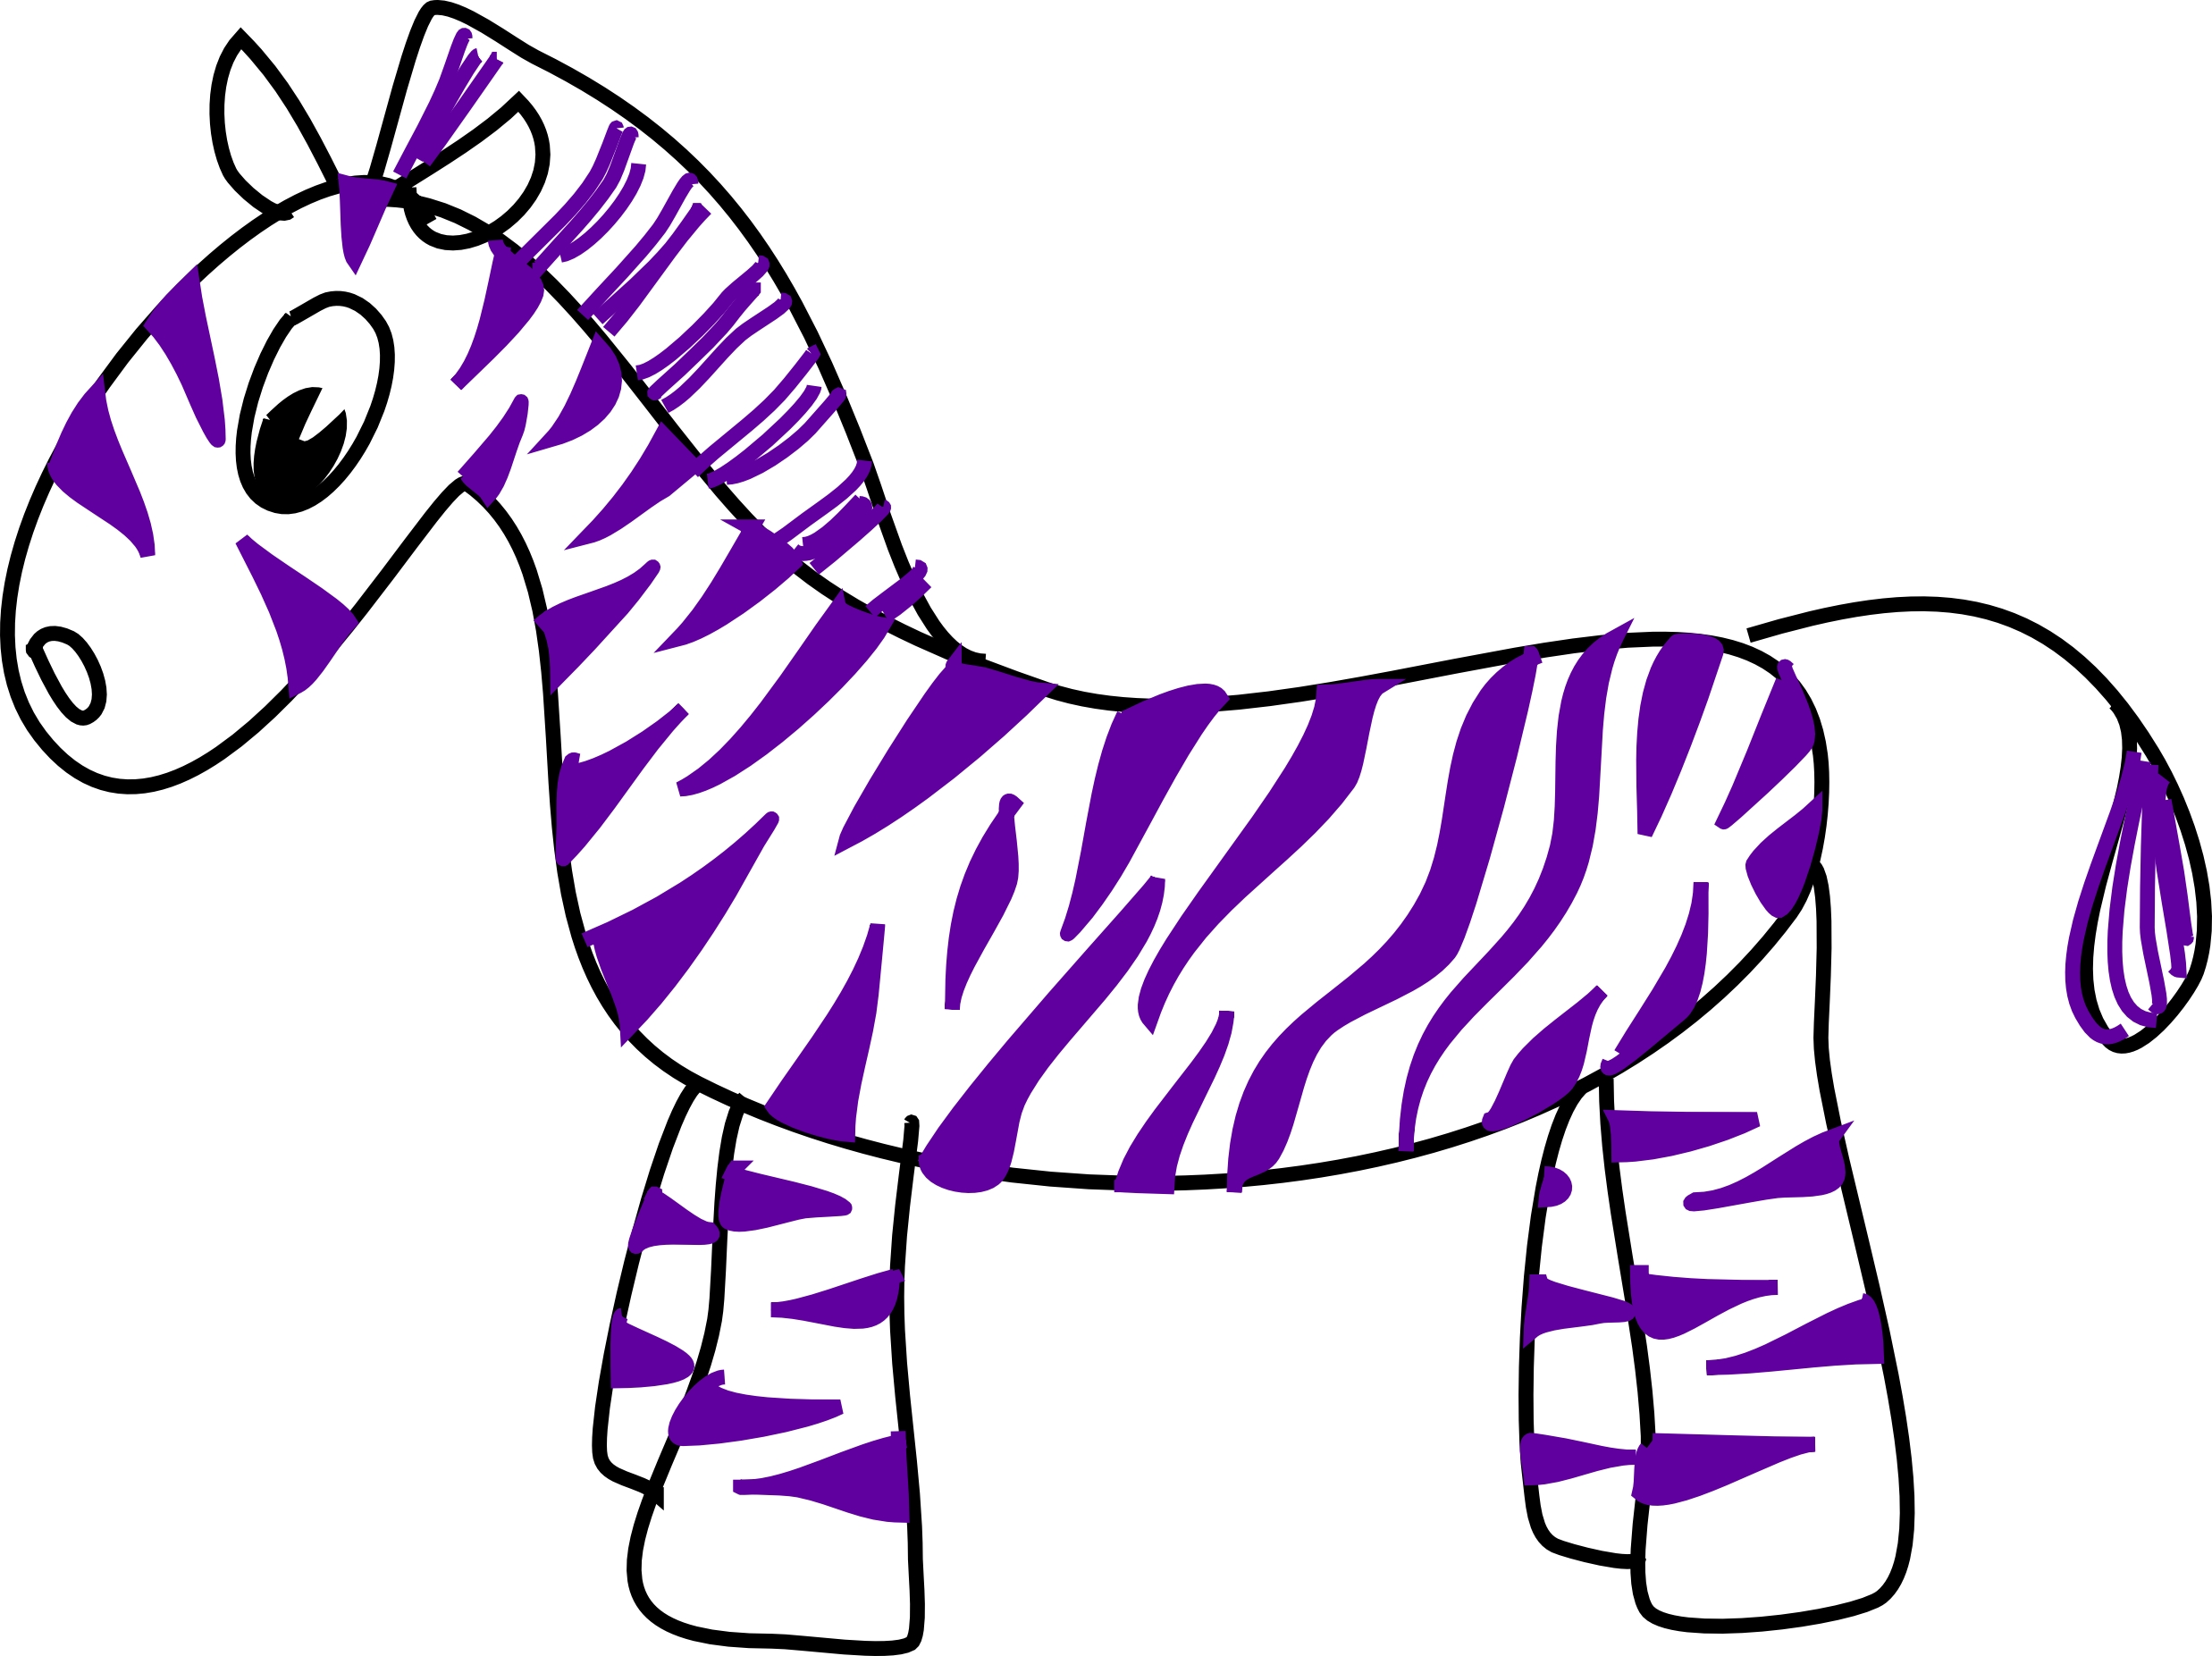 clipart of zebra - photo #33